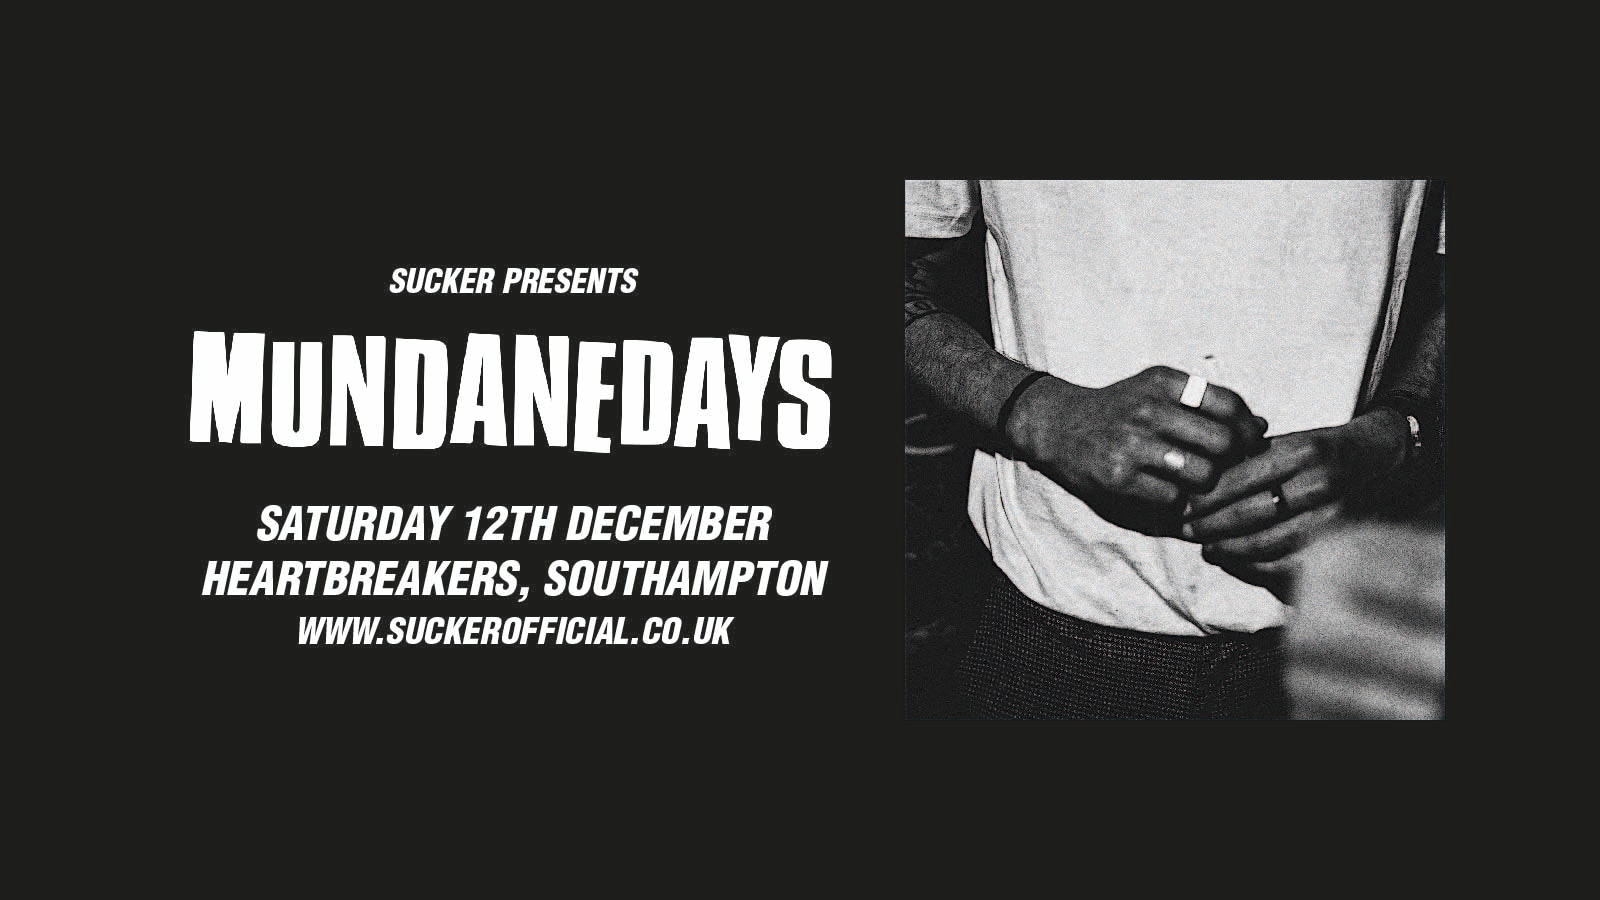 Mundane Days at Heartbreakers, Southampton